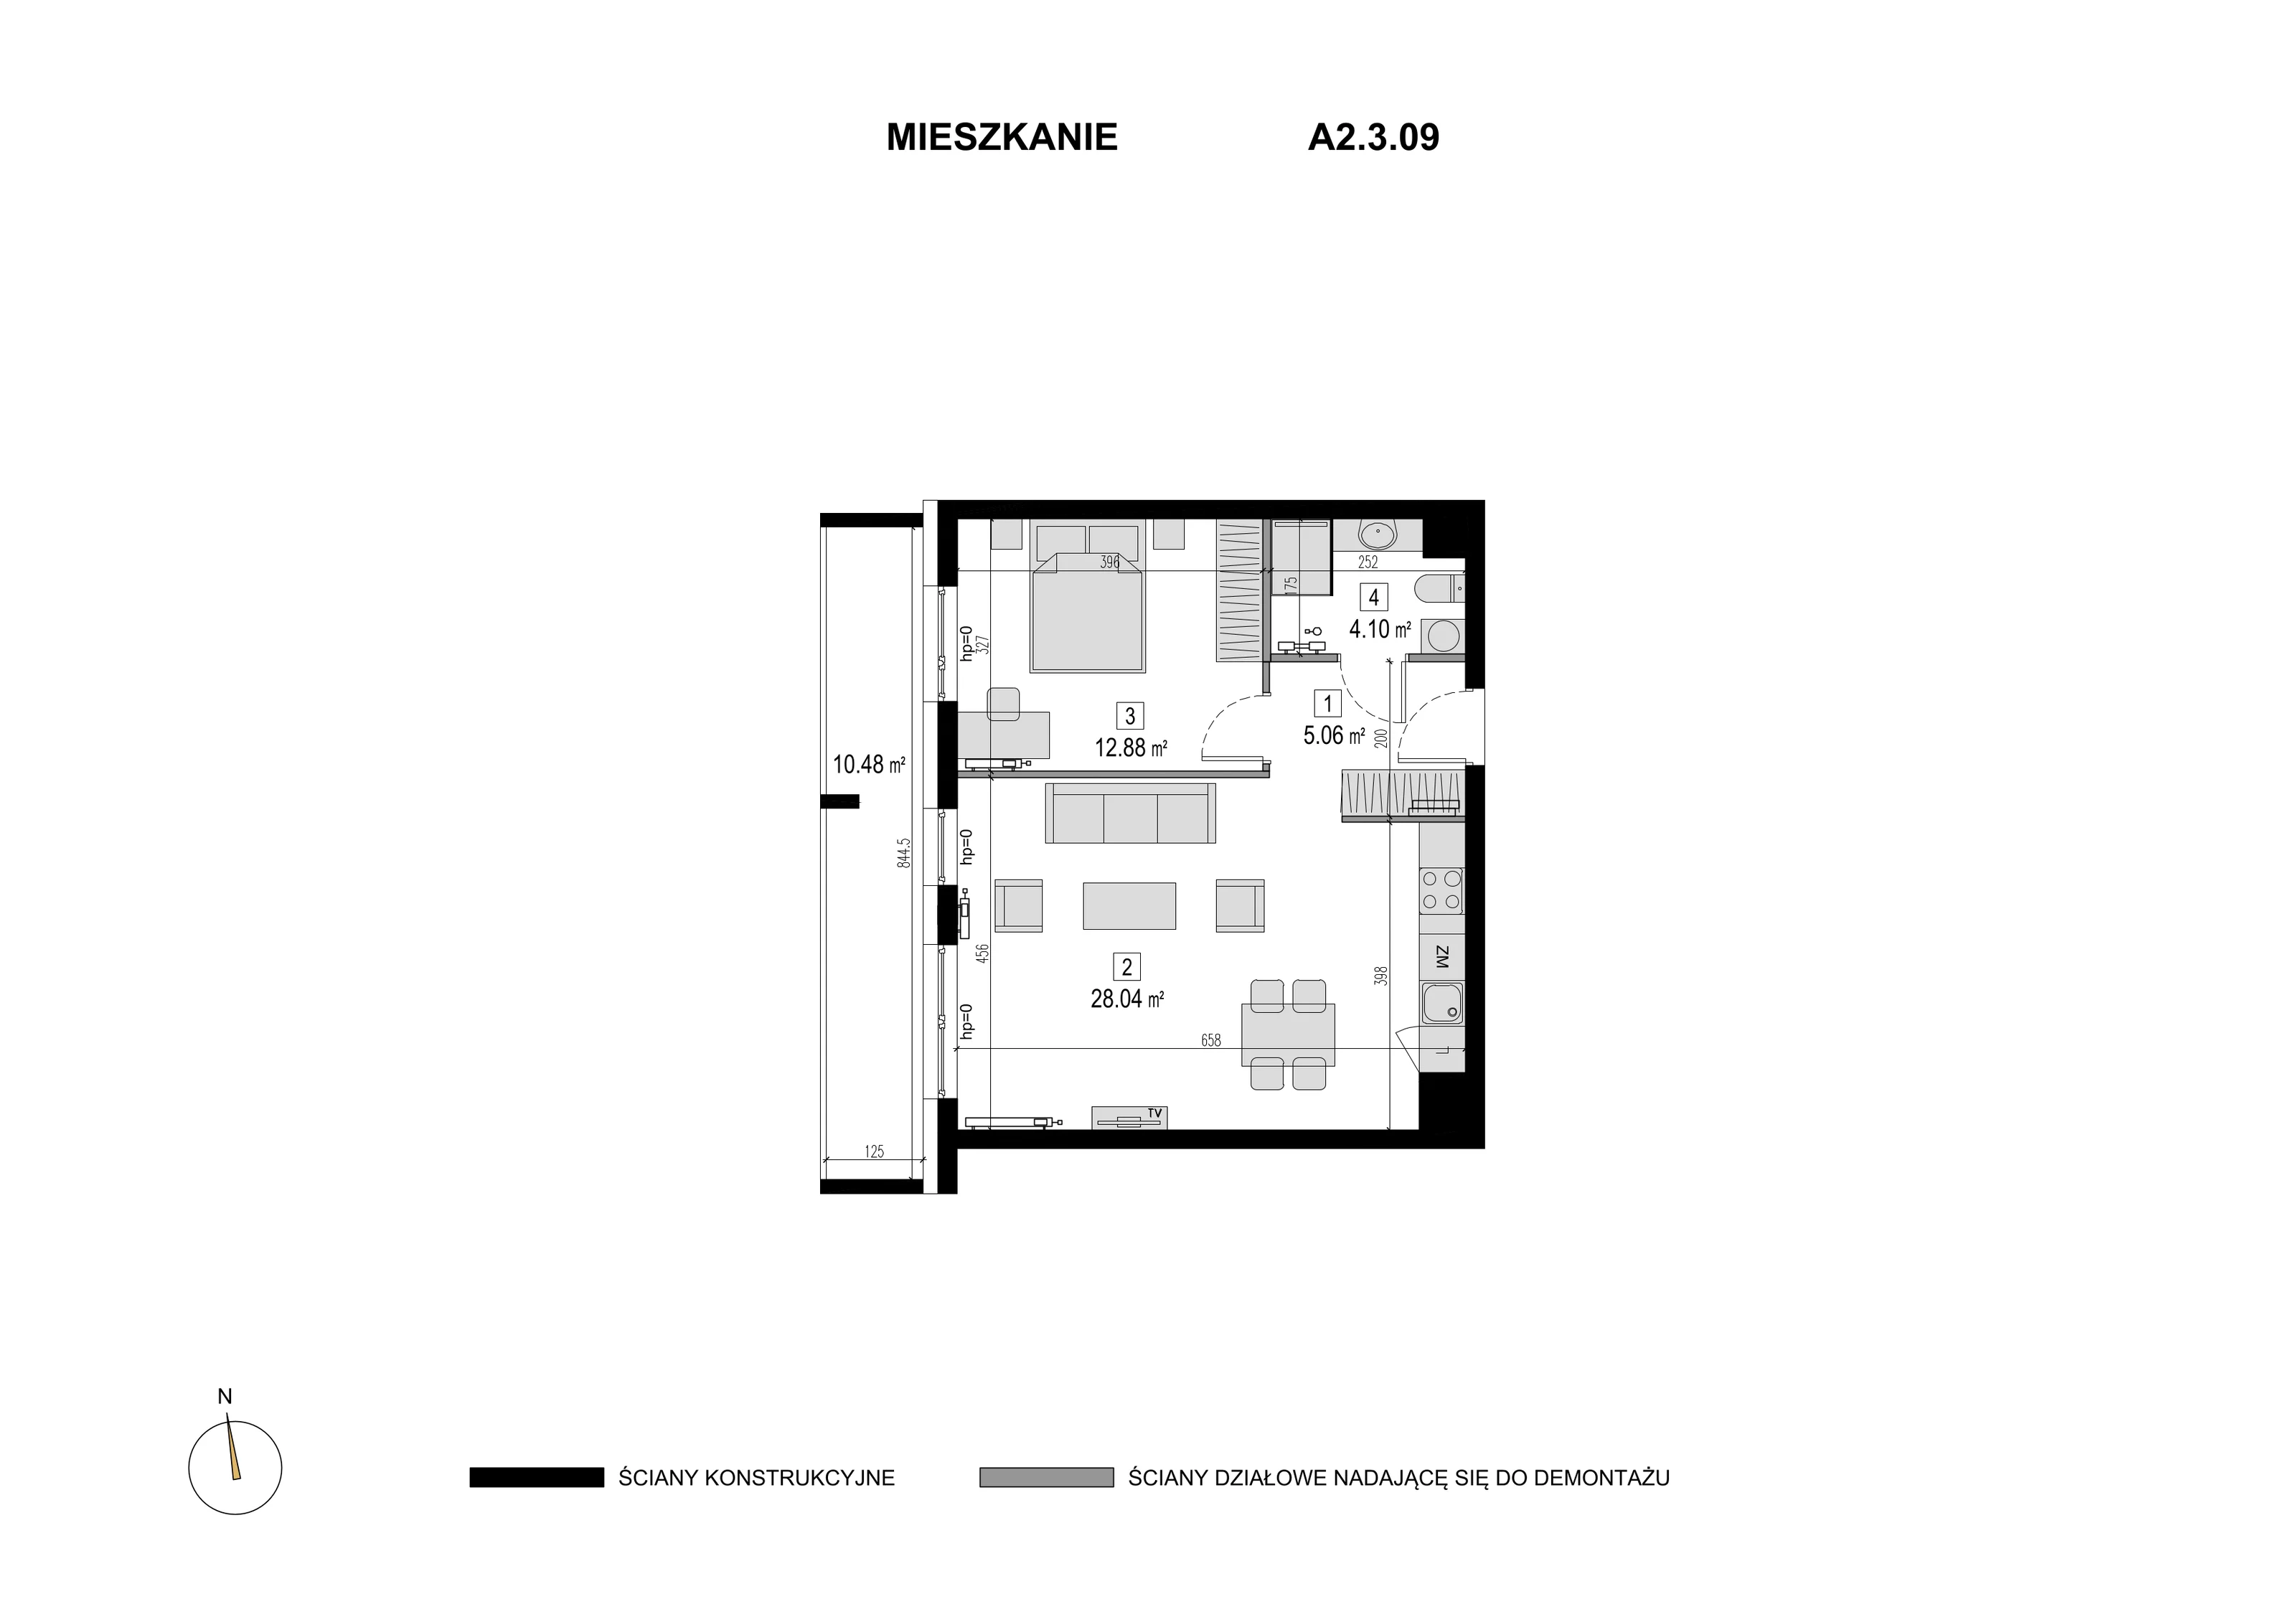 Mieszkanie 50,08 m², piętro 2, oferta nr A2.3.09, Novaforma, Legnica, ul. Chojnowska